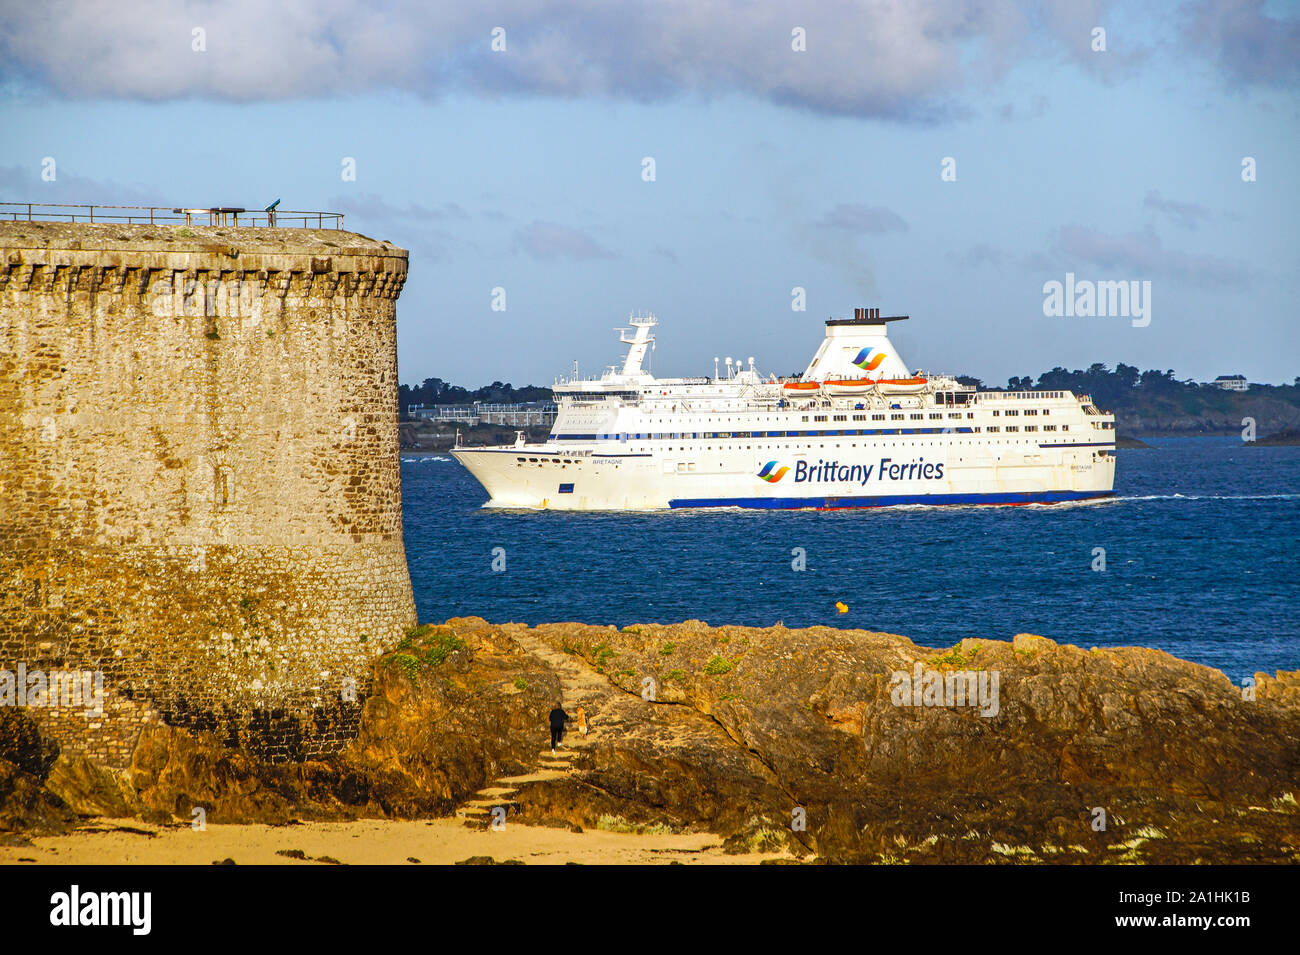 Brittany Ferries car ferry et Britannia arriver au port de Saint-Malo Bretagne France Banque D'Images